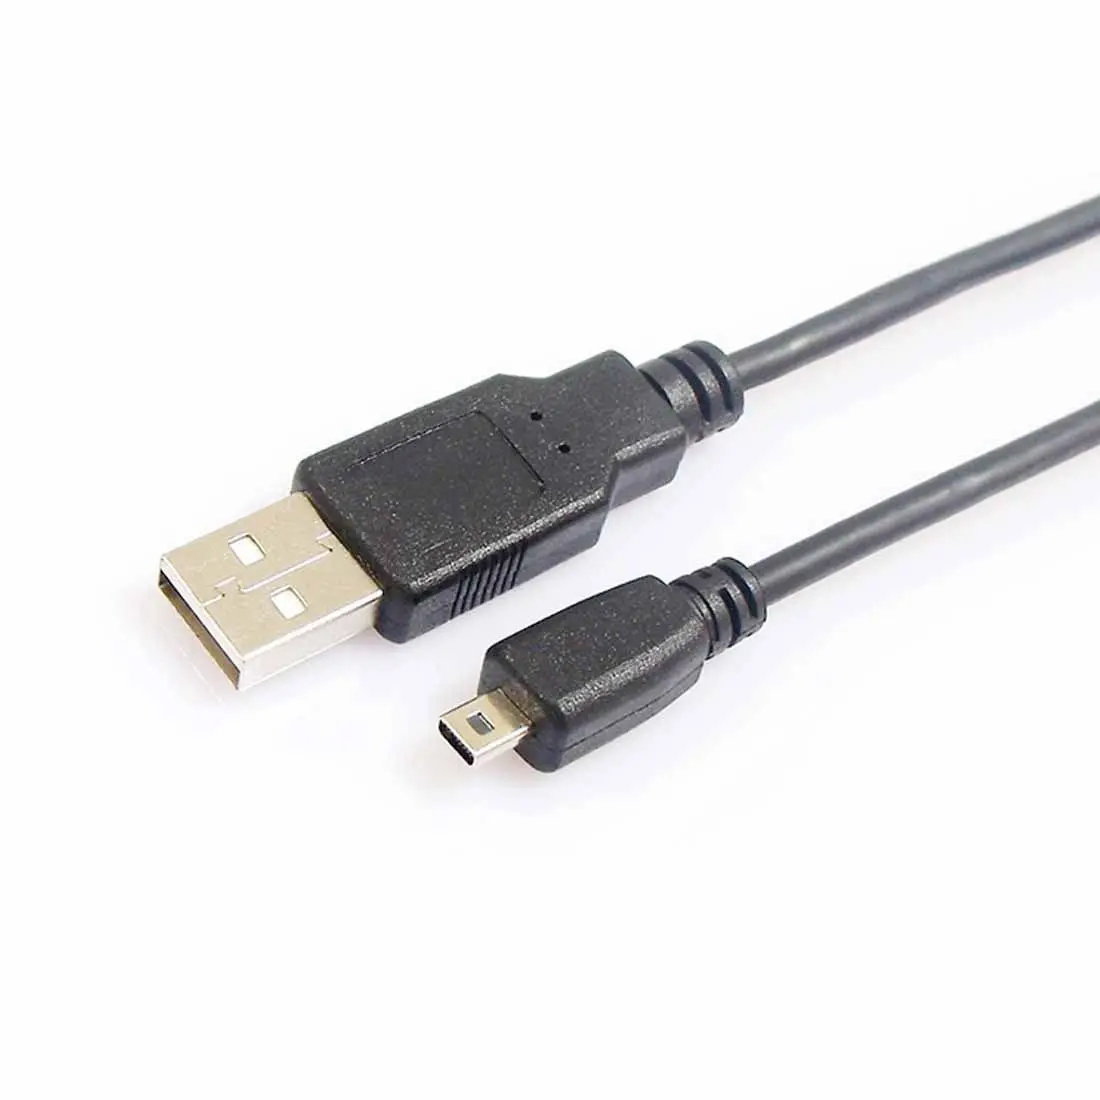 USB кабель для передачи данных для цифровой камеры NIKON Coolpix S100 P7800 P7700 P7100 P6000_ P330 P310 P300 P100 L830 L820 L620 L610 L6 L5 L4 P500 S2800